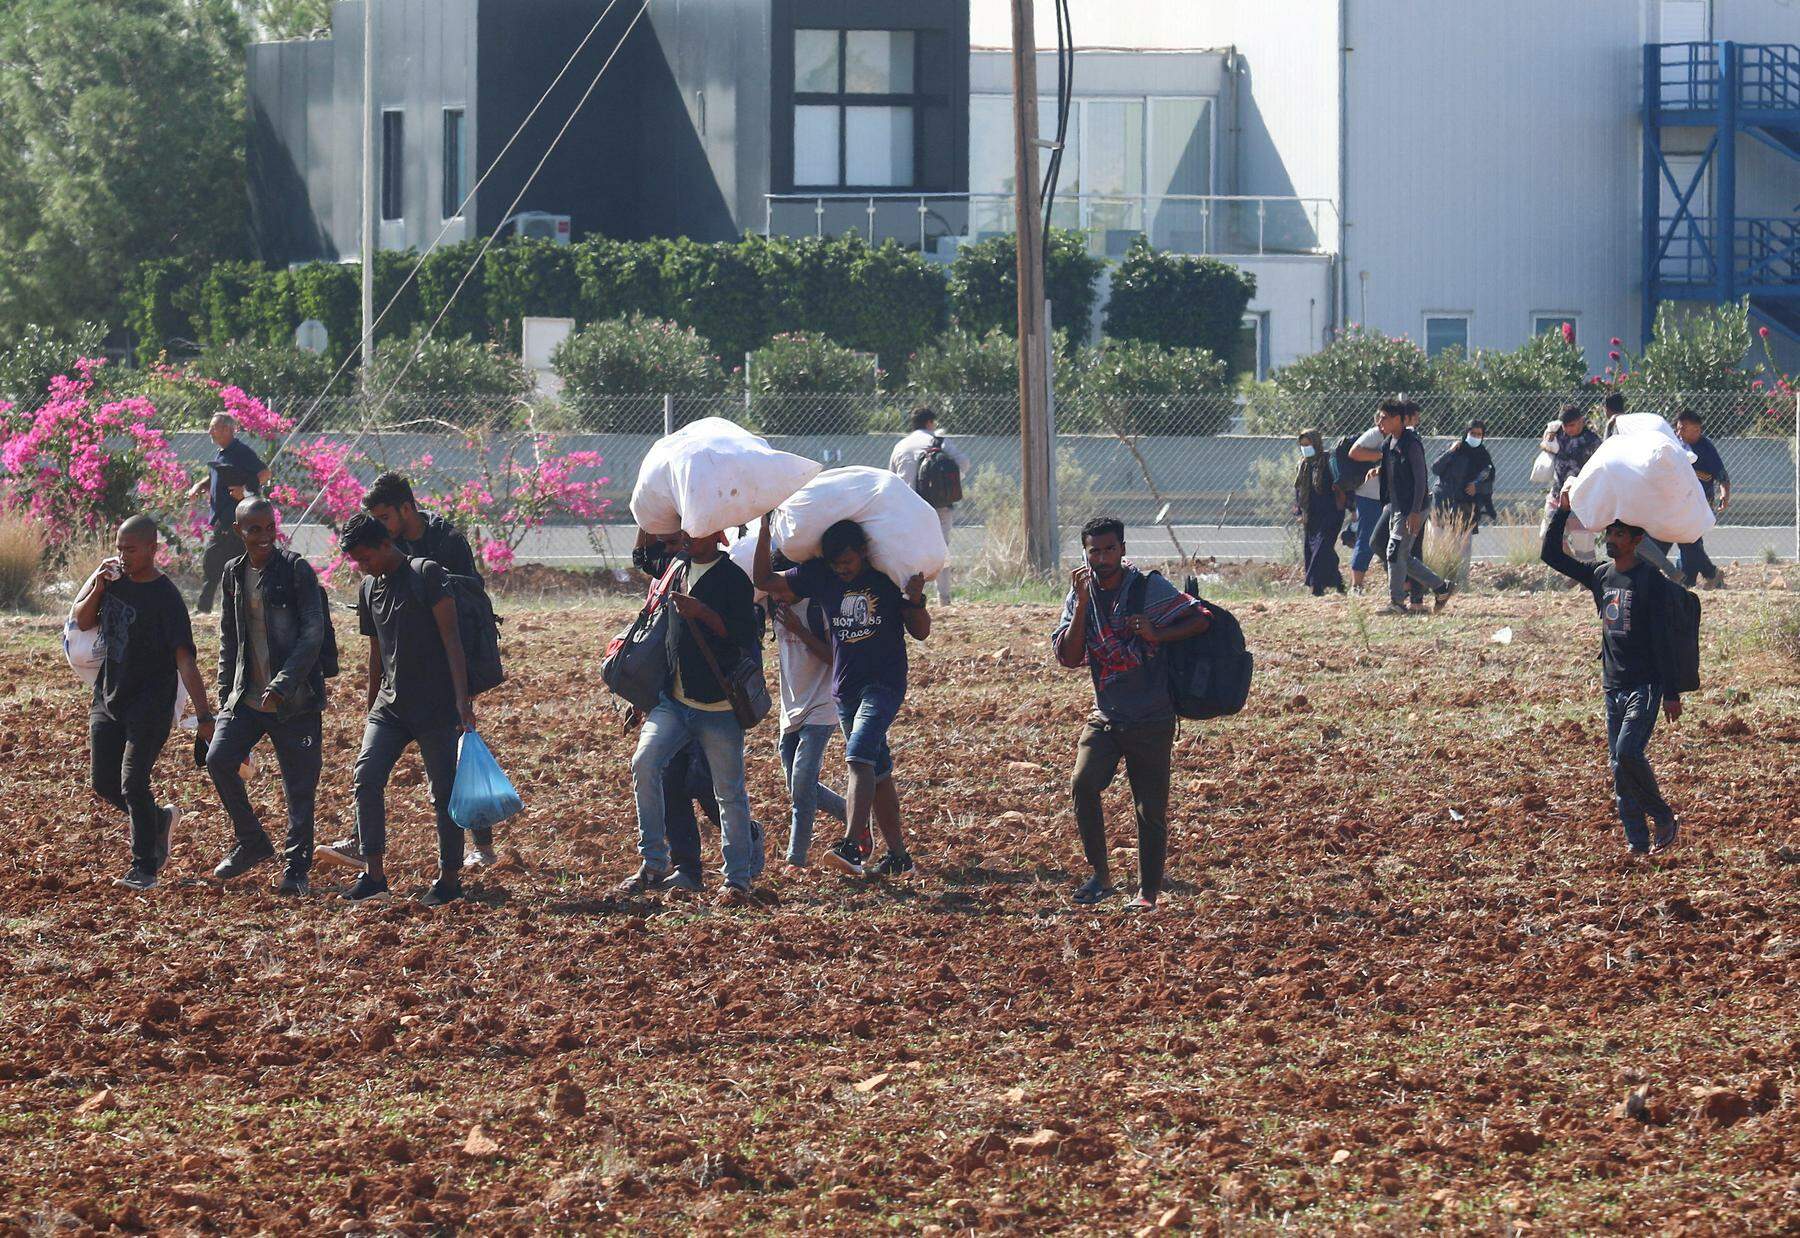 zypern bearbeitet keine asylanträge syrischer migranten mehr